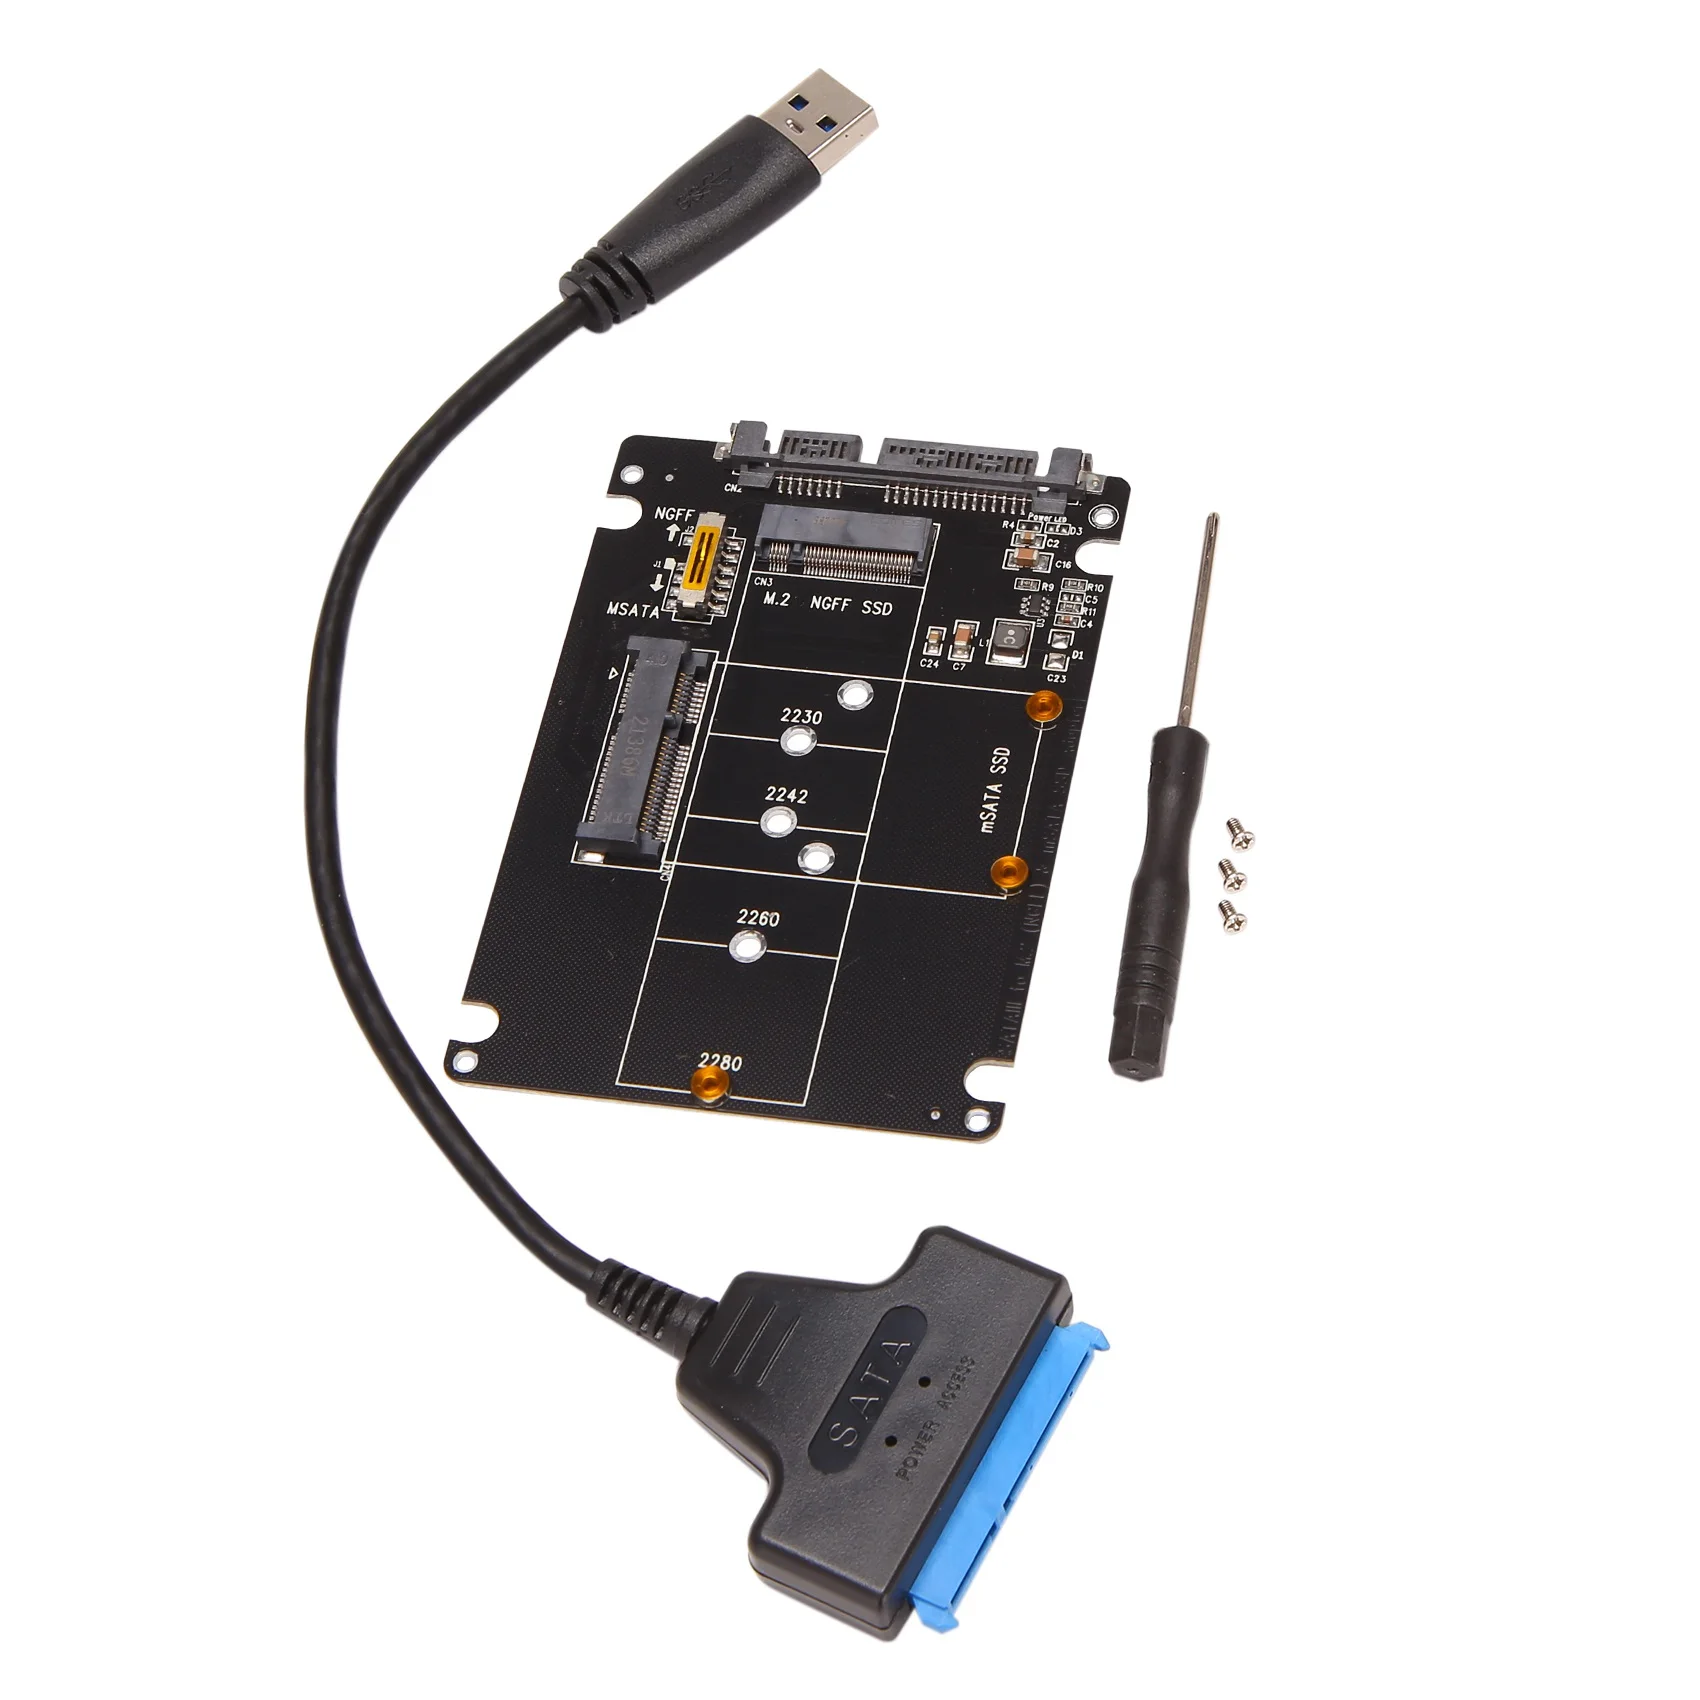 M.2 NGFF Адаптер MSATA-USB 3.0 Конвертер Считывающая карта с кабелем SATA Портативный флэш-накопитель с поддержкой SATA SSD